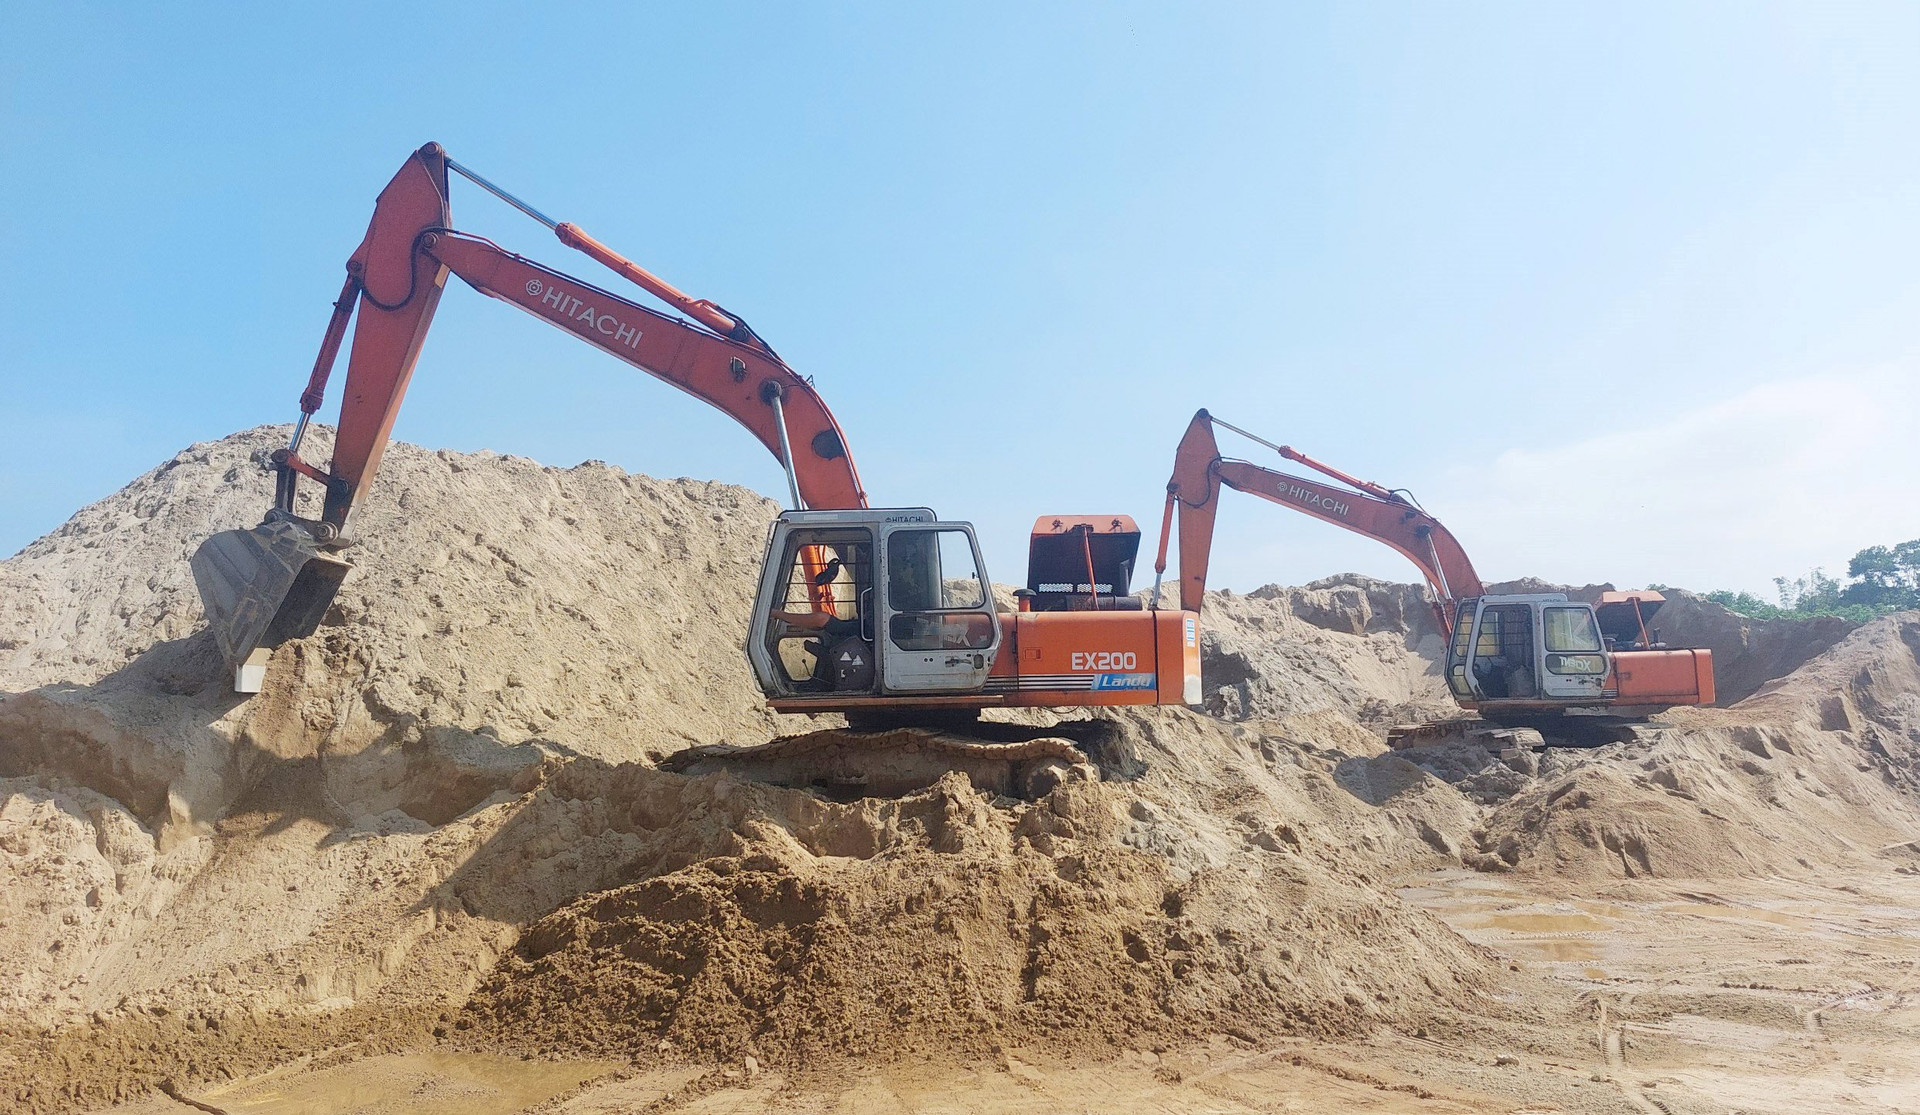 Quảng Trị: Khai thác cát, sỏi bền vững góp phần phát triển kinh tế - xã hội